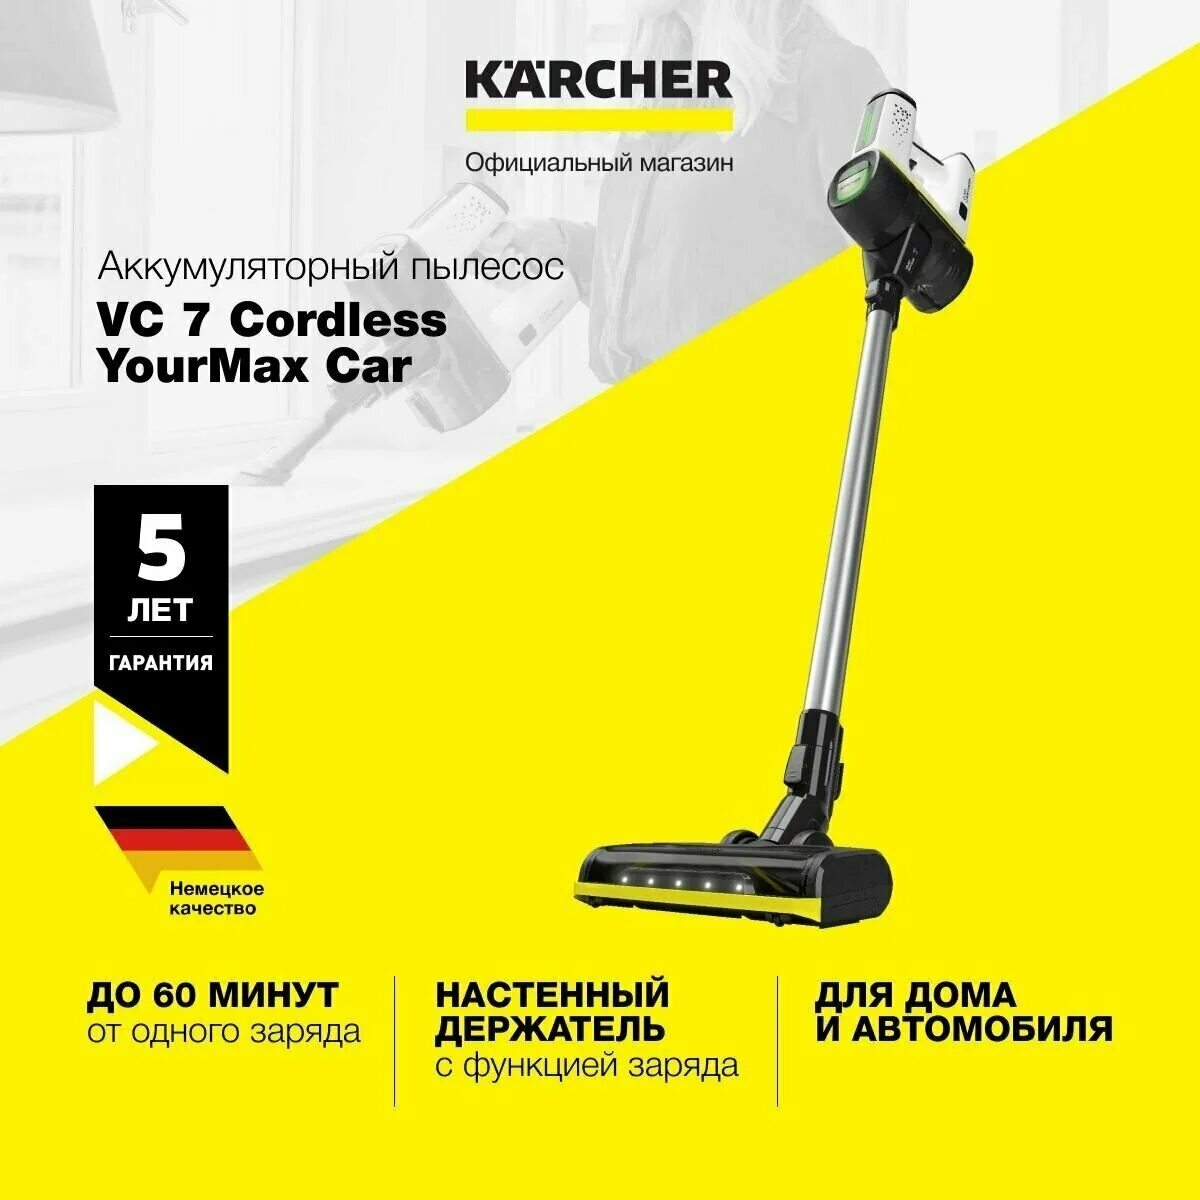 Вертикальный пылесос karcher vc 4 cordless. Karcher VC 7 Cordless yourmax. VC 6 Cordless Premium ourfamily. Пылесос Karcher VC 4 Cordless myhome. Аккумуляторный пылесос Kärcher VC 7 Cordless yourmax.